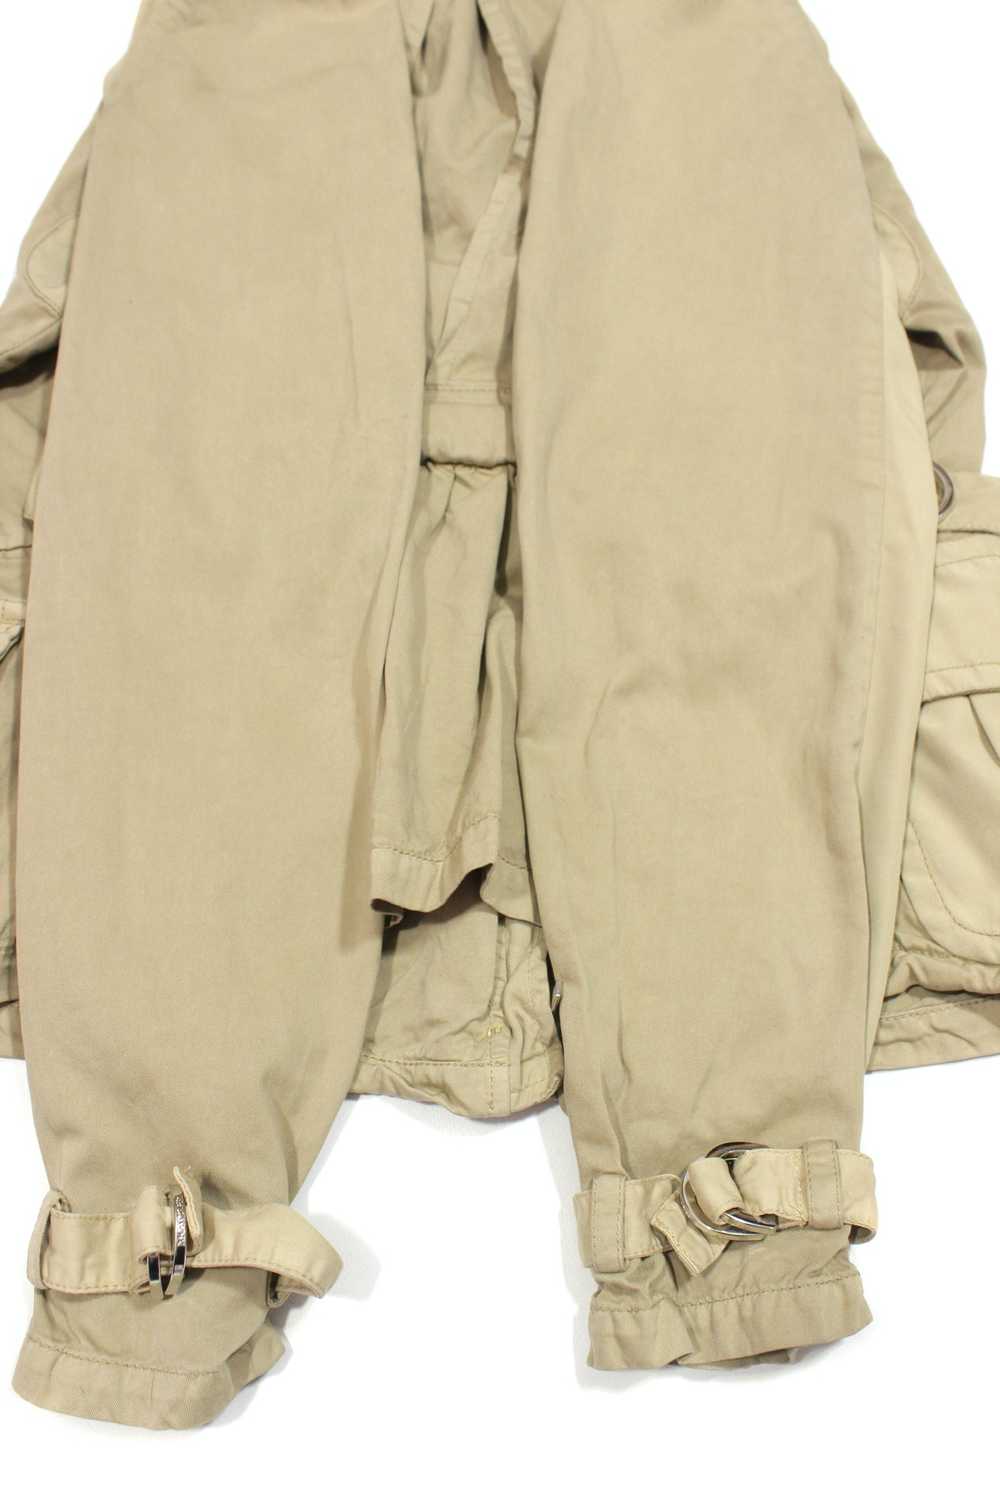 Moncler 90S M65 Multipocket Jacket Vintage - image 6